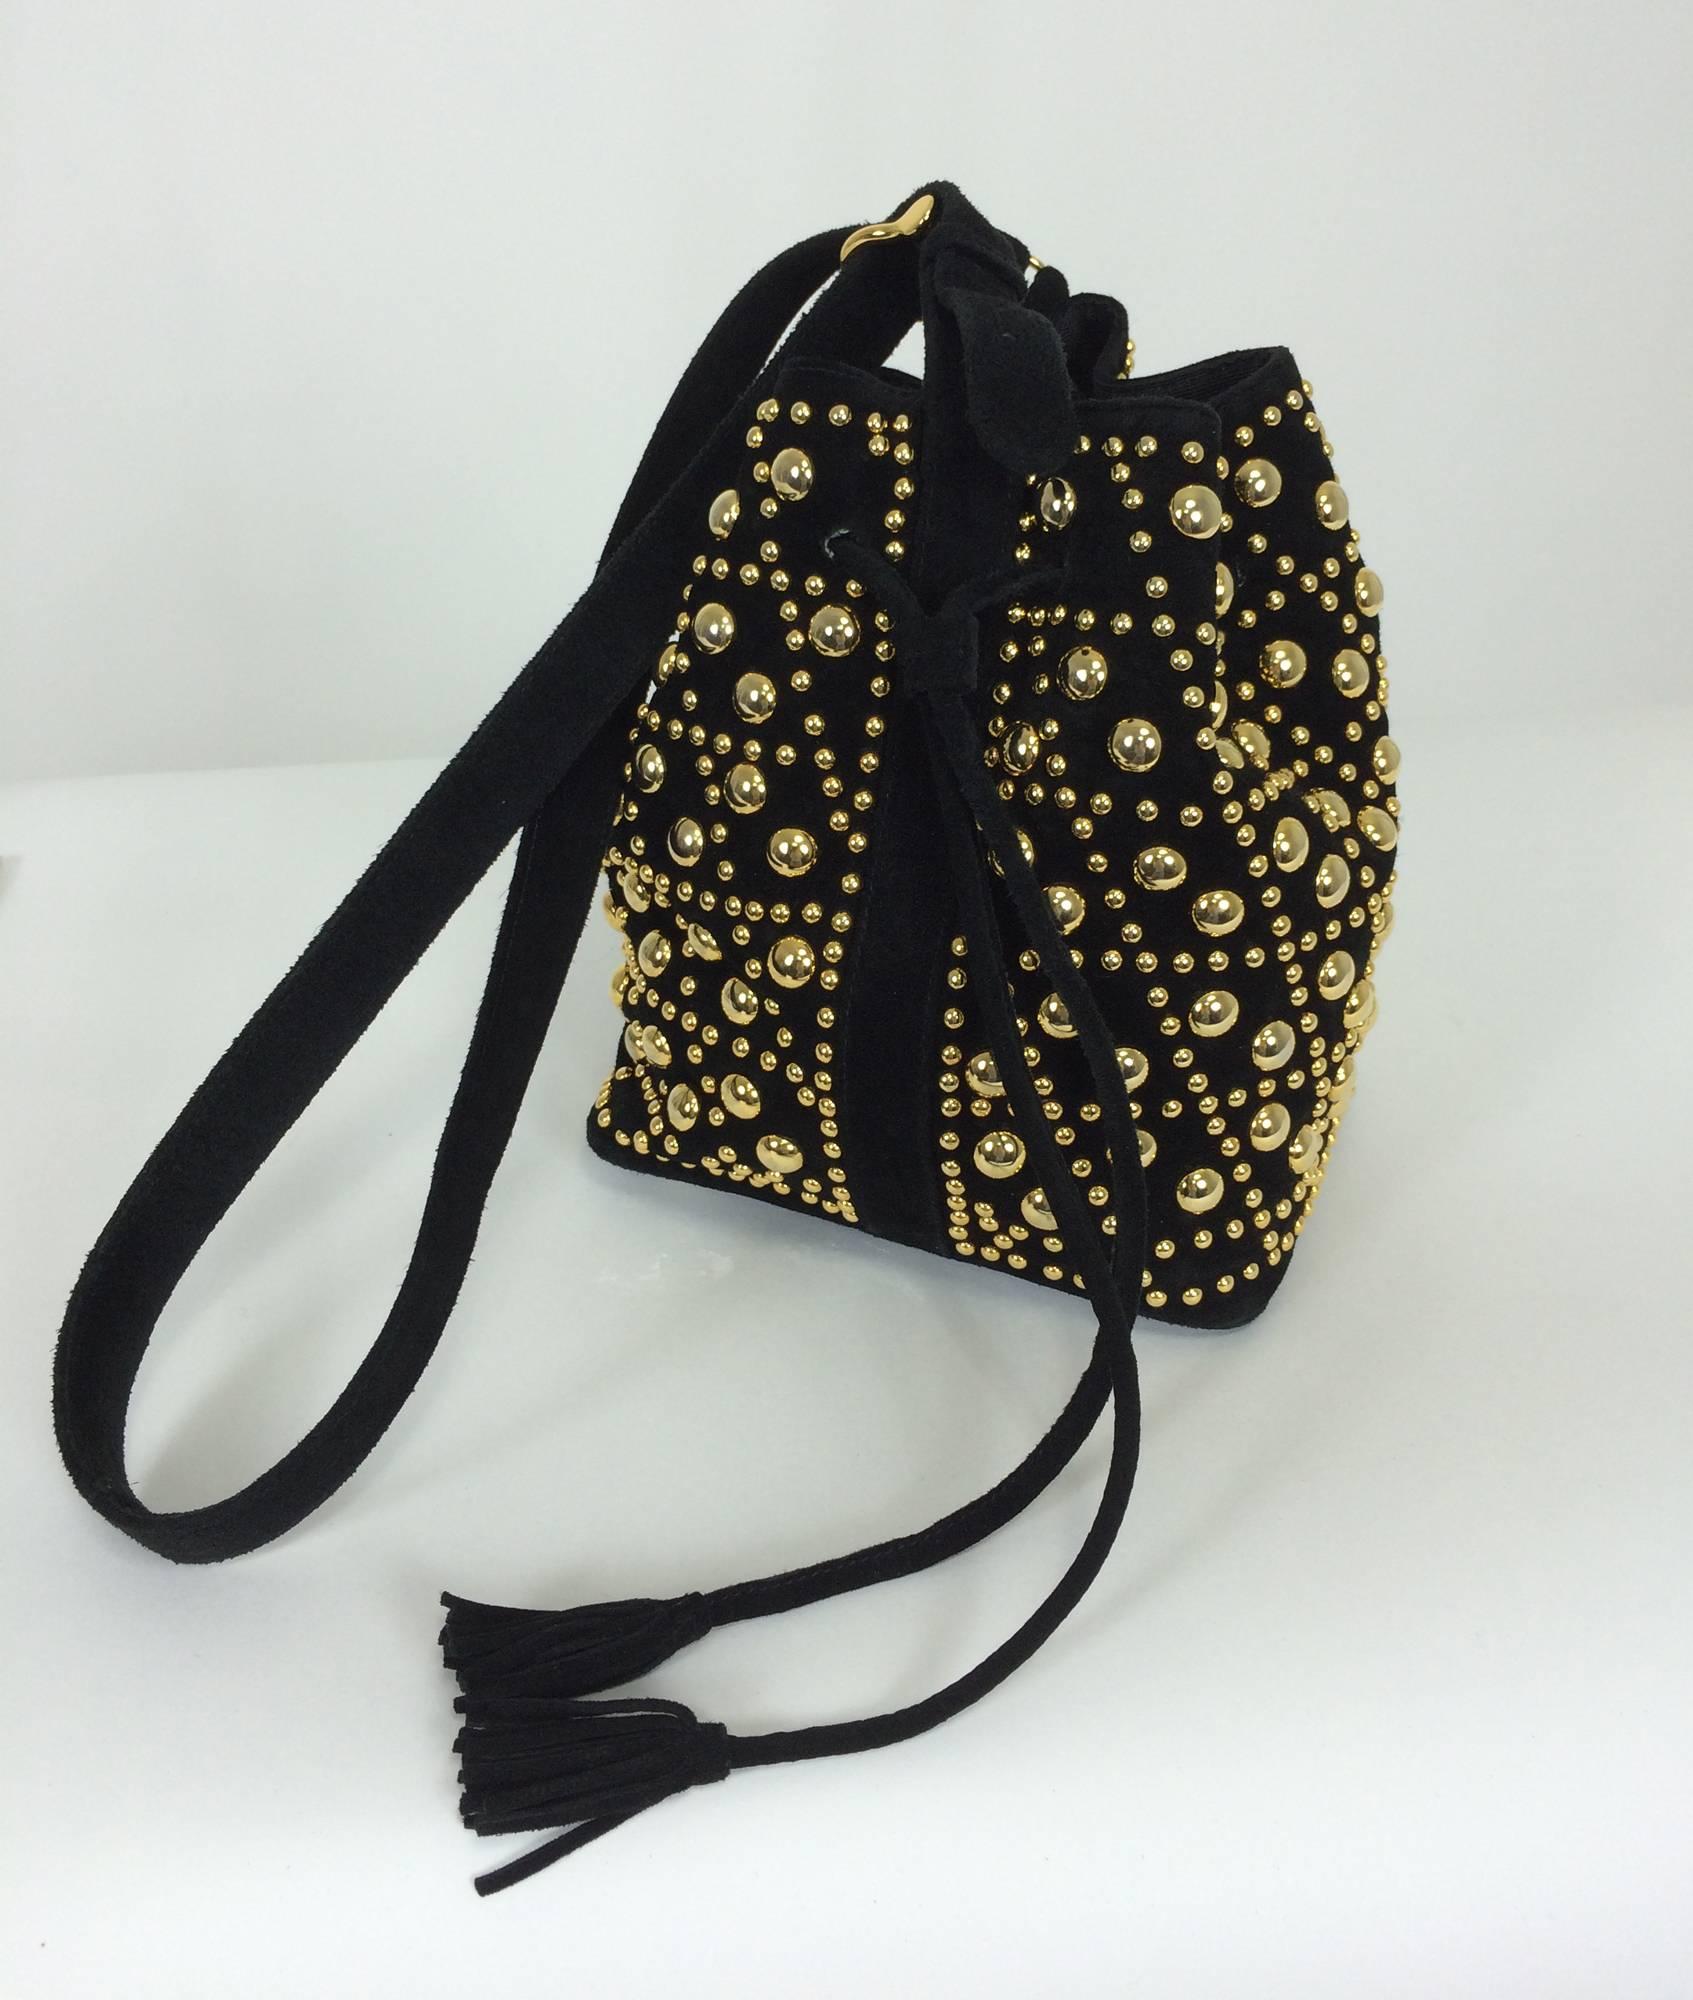 Gold studded black suede shoulder bag Sepcoeur Paris 1980s 2